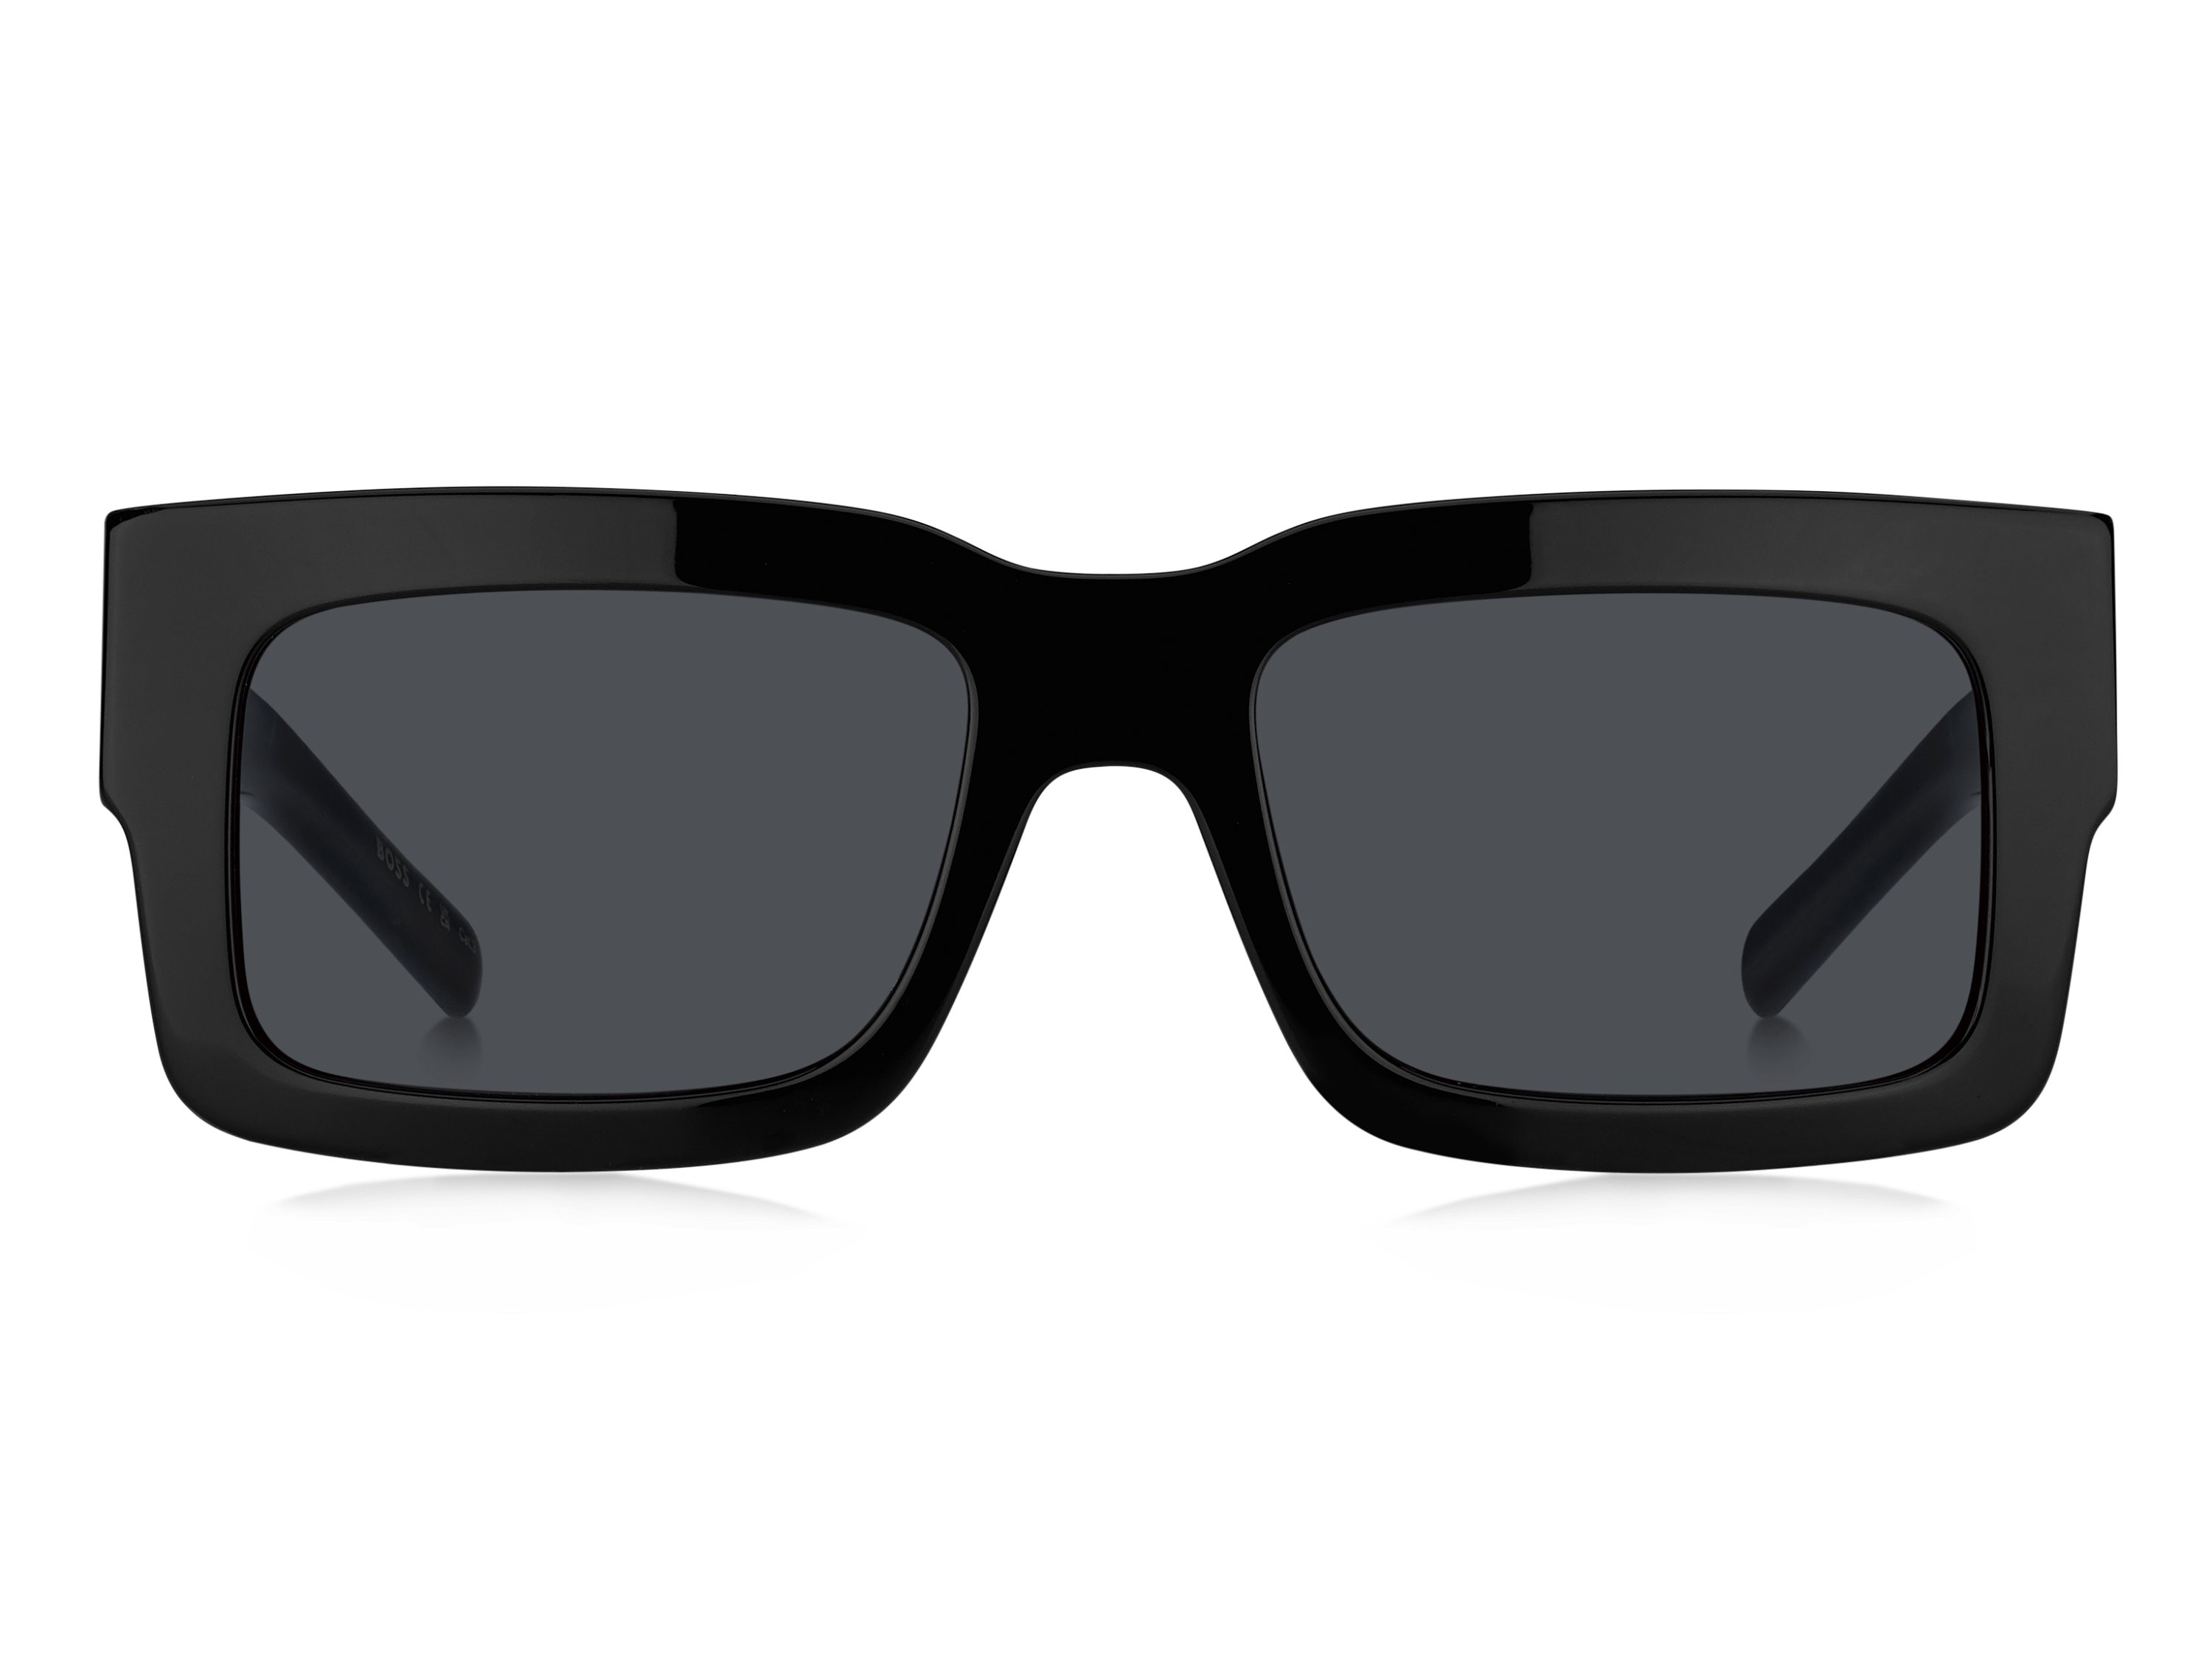 Das Bild zeigt die Sonnenbrille BOSS1654S 807 von der Marke BOSS in Schwarz.